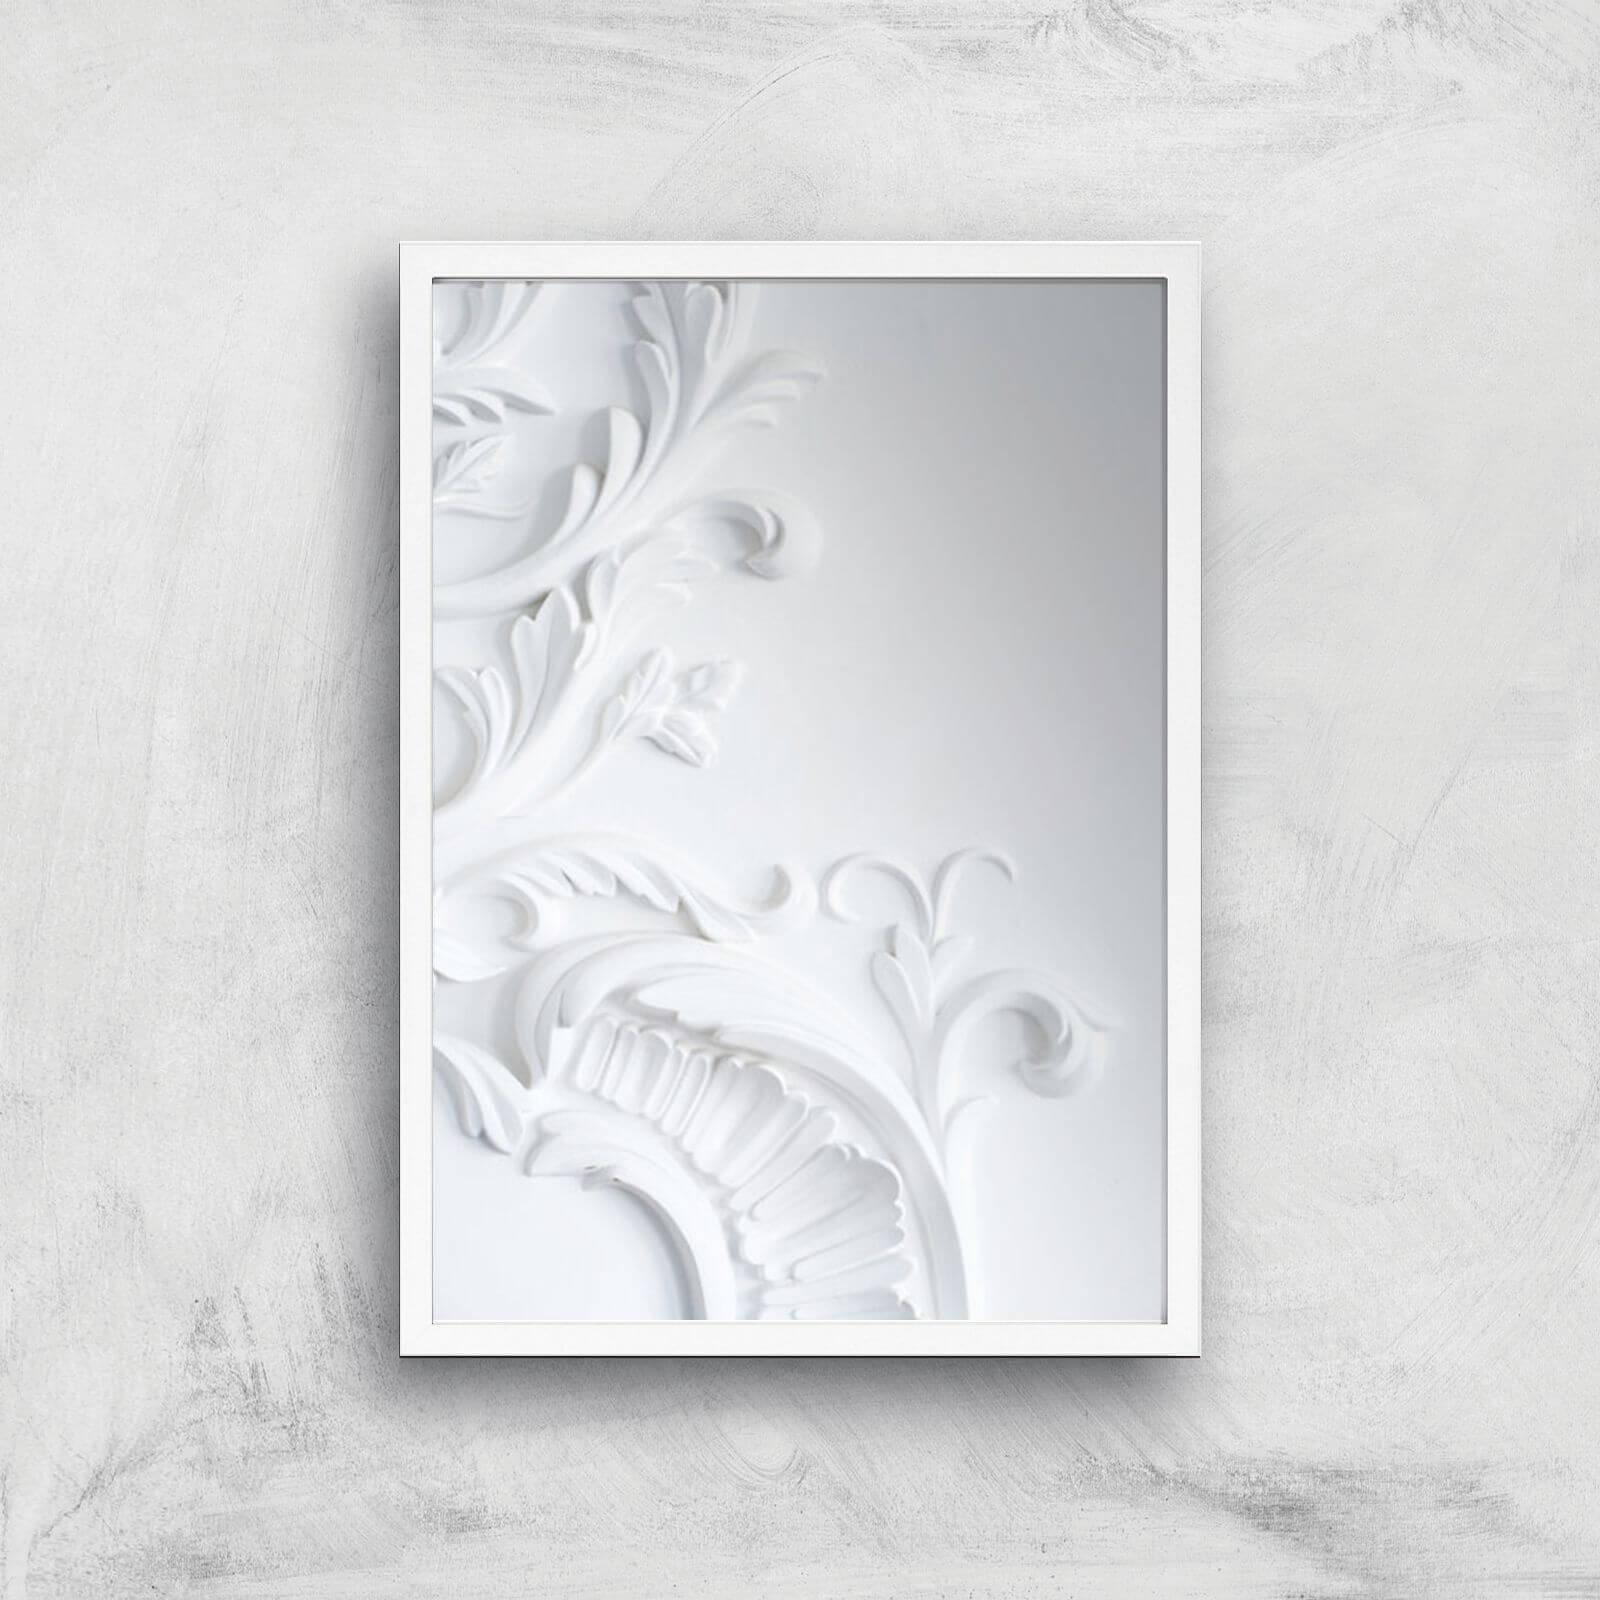 Louis Giclee Art Print - A3 - White Frame